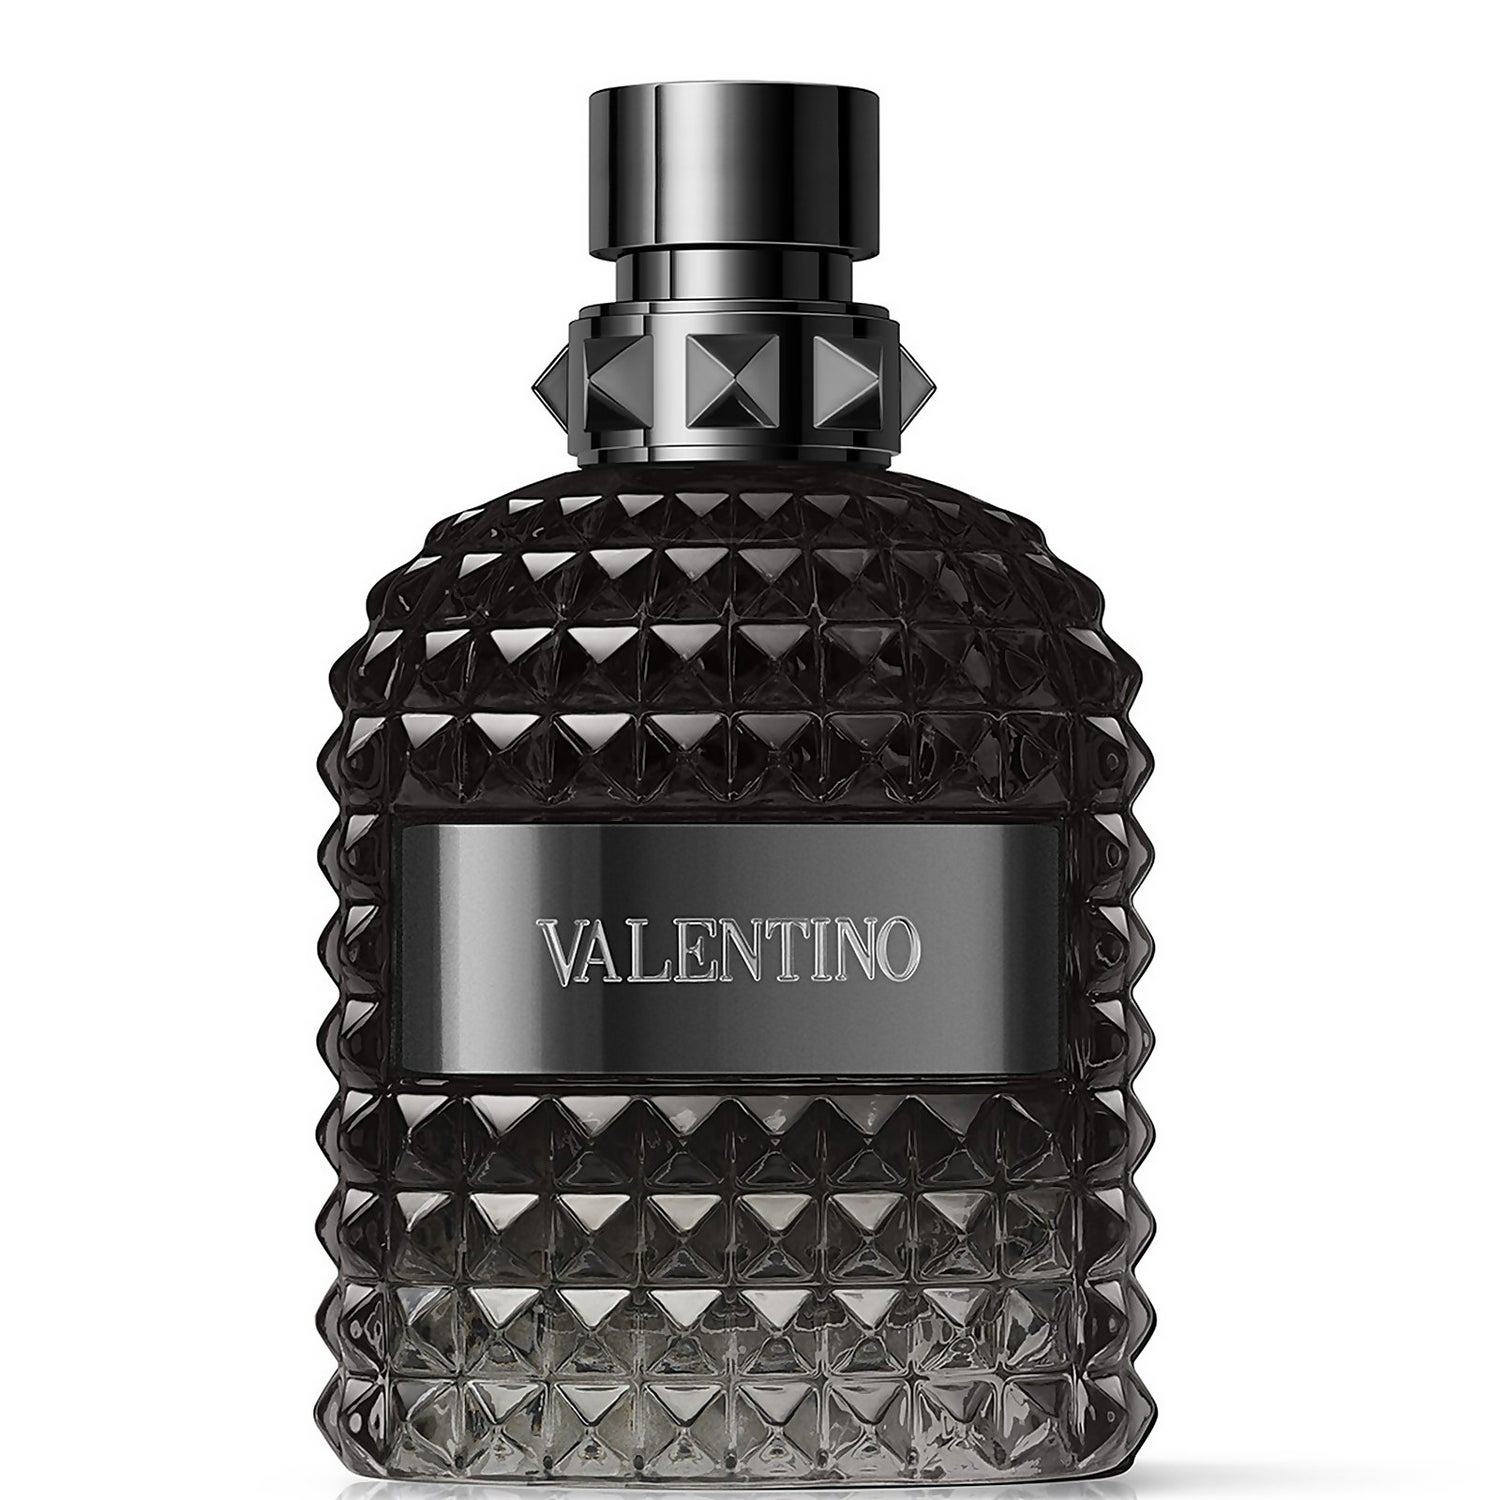 Valentino Uomo Intense Eau de Parfum for Him 100ml